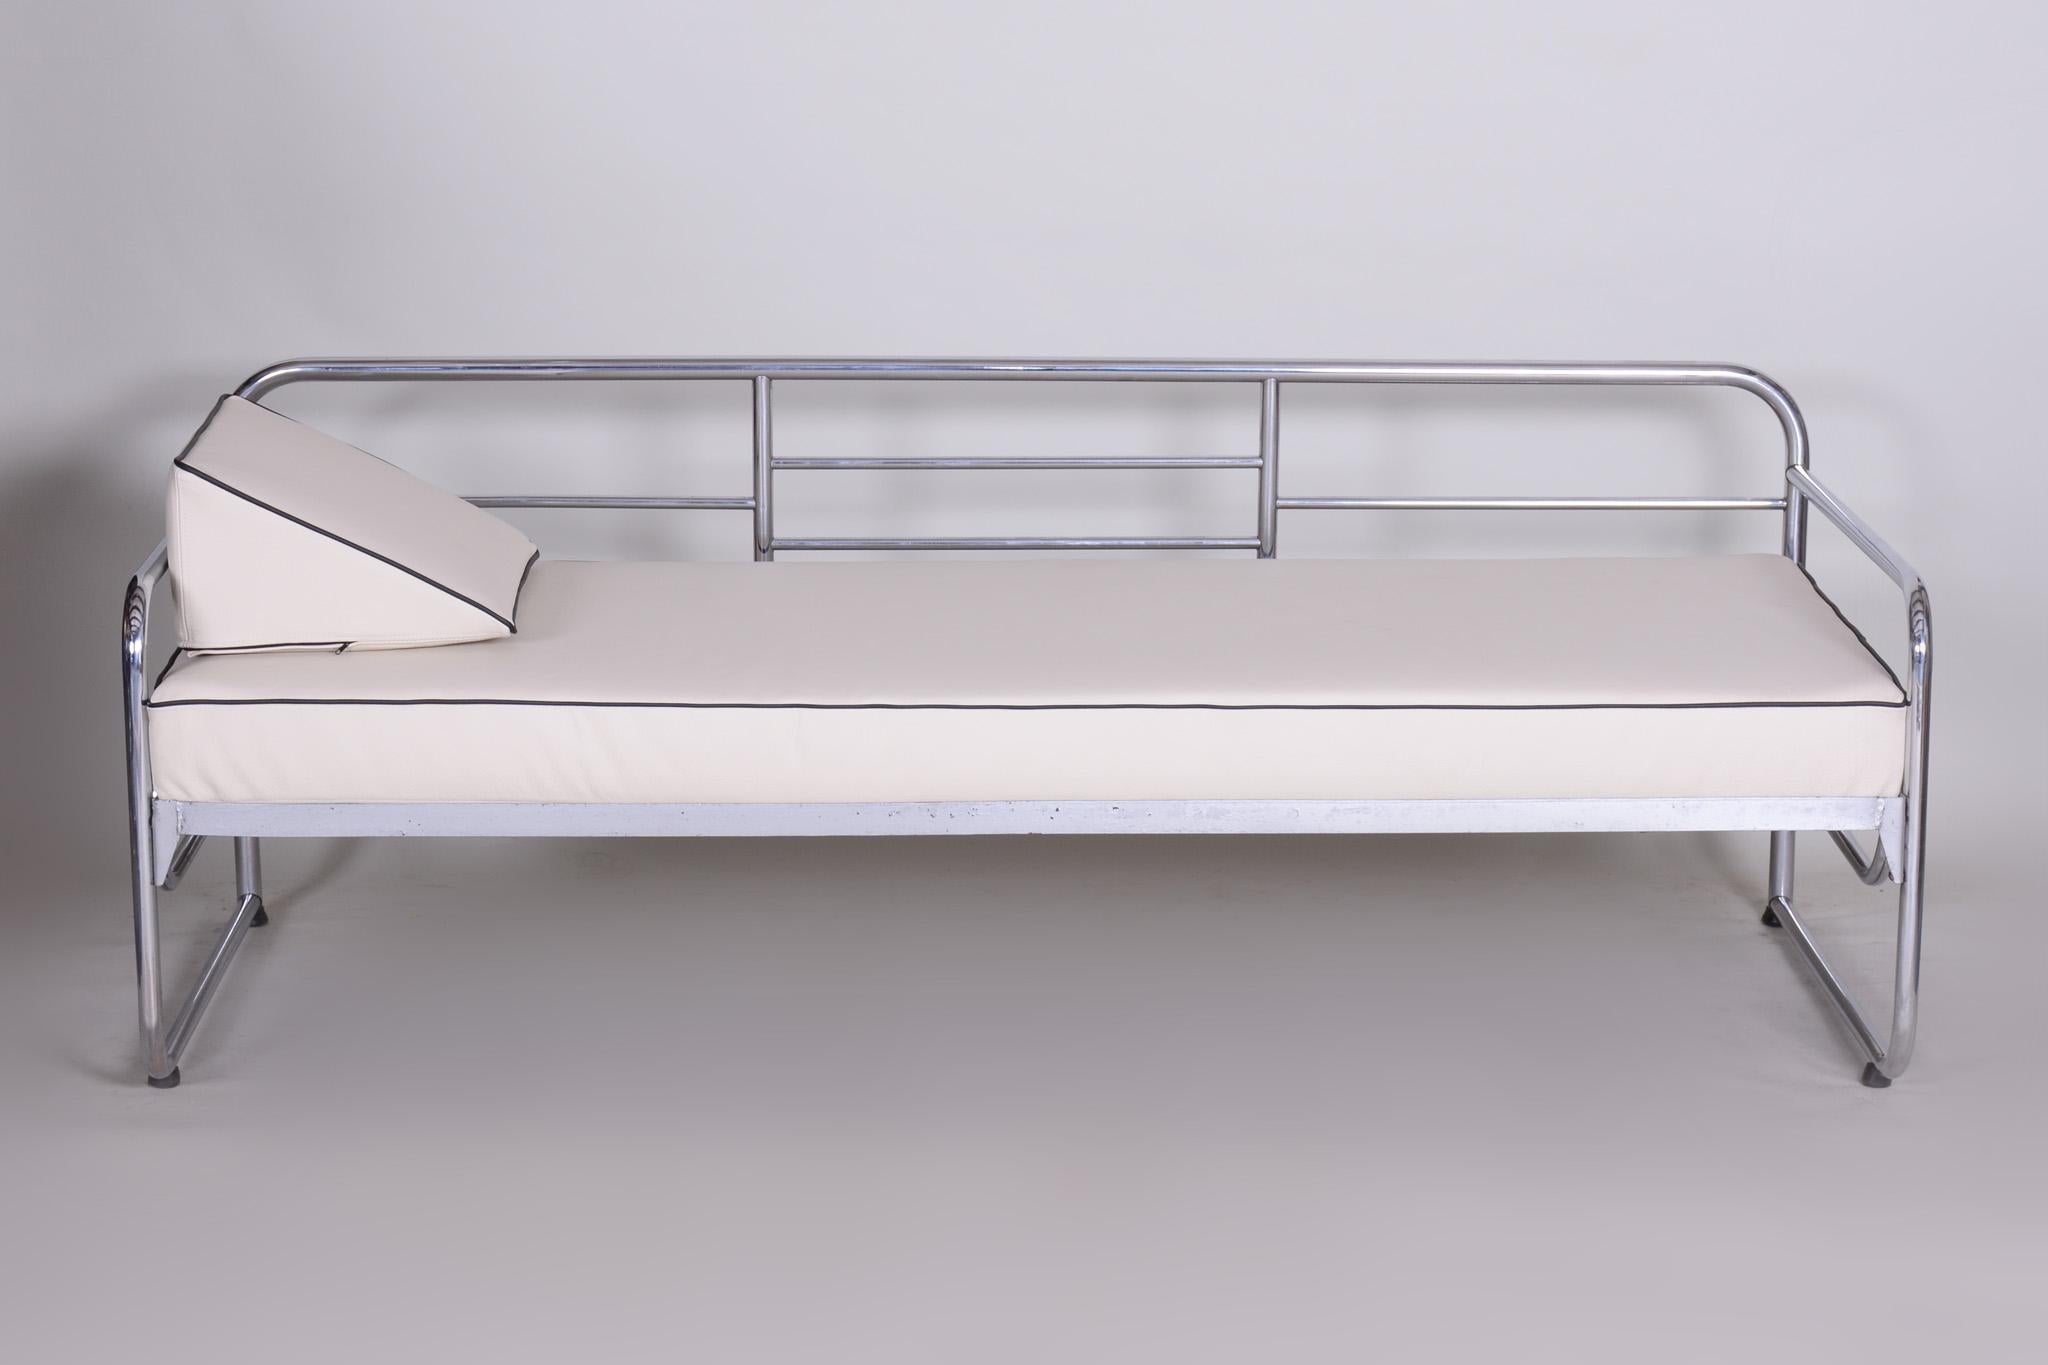 Canapé de style Bauhaus avec une structure en acier tubulaire chromé.
Fabriqué par Mücke-Melder dans les années 1930.
L'acier tubulaire chromé est en parfait état d'origine.
Nouvellement rembourré en cuir ivoire de haute qualité.
Source :